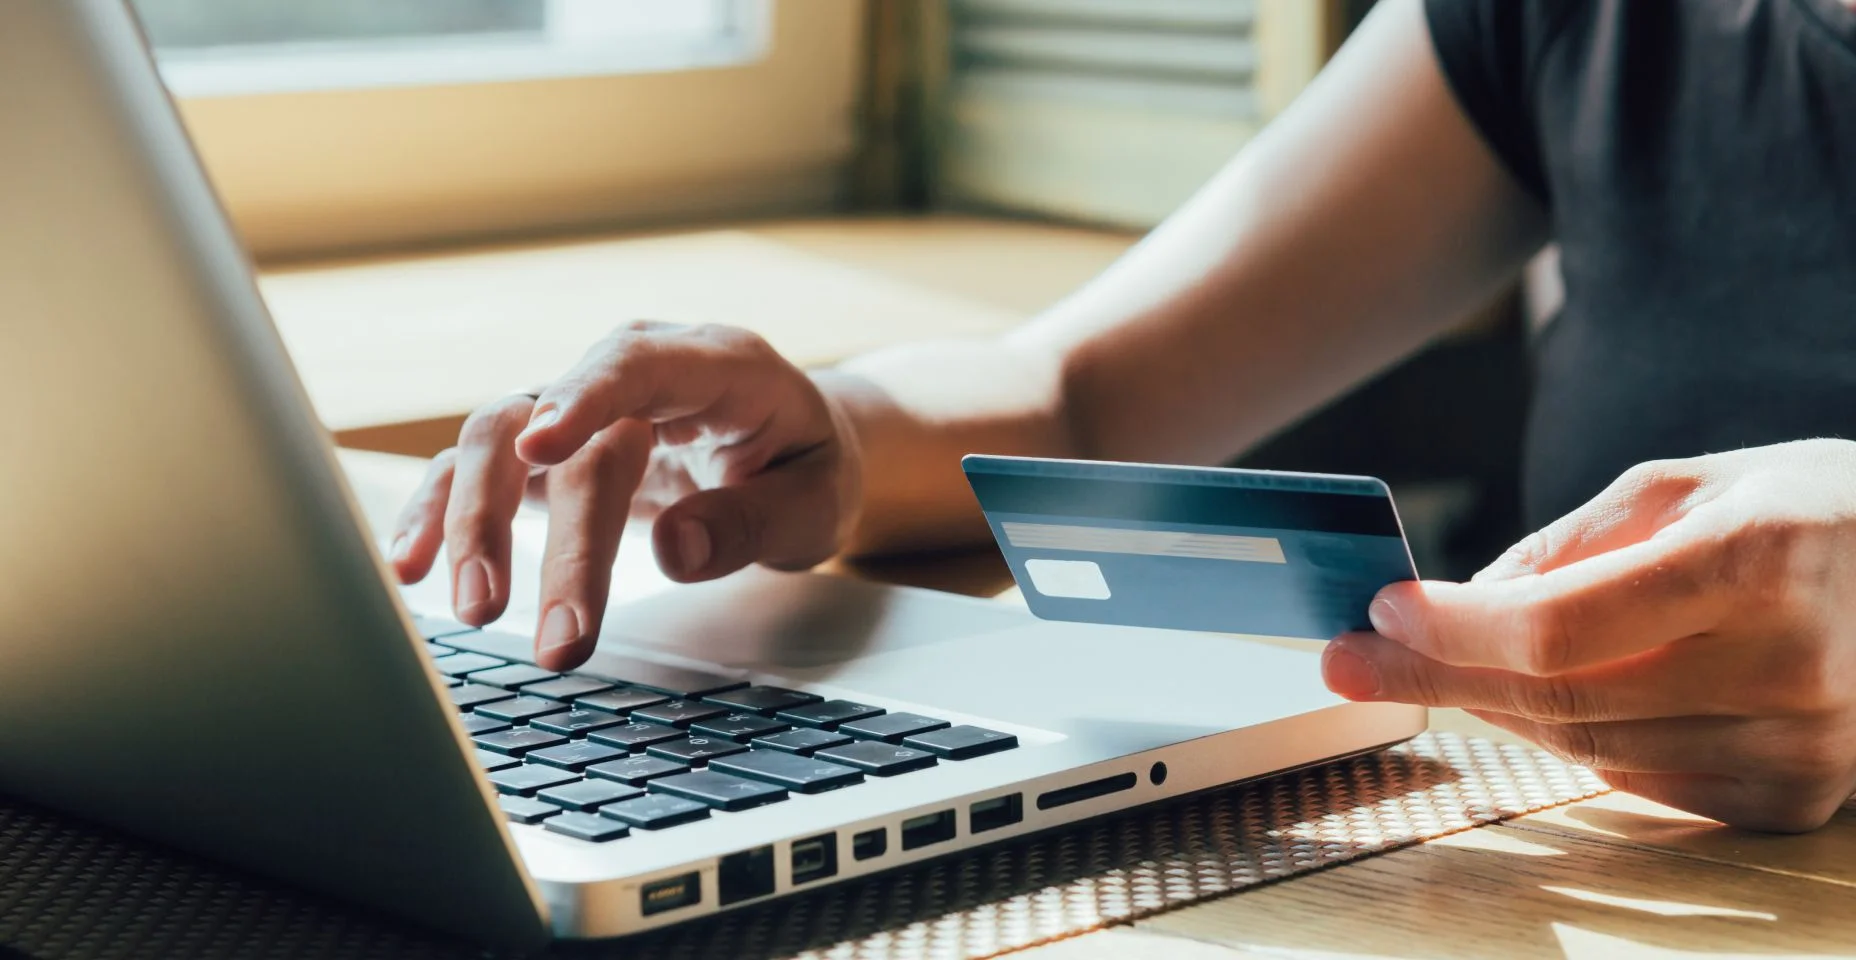 garota faz uma compra na internet no computador com cartão de crédito